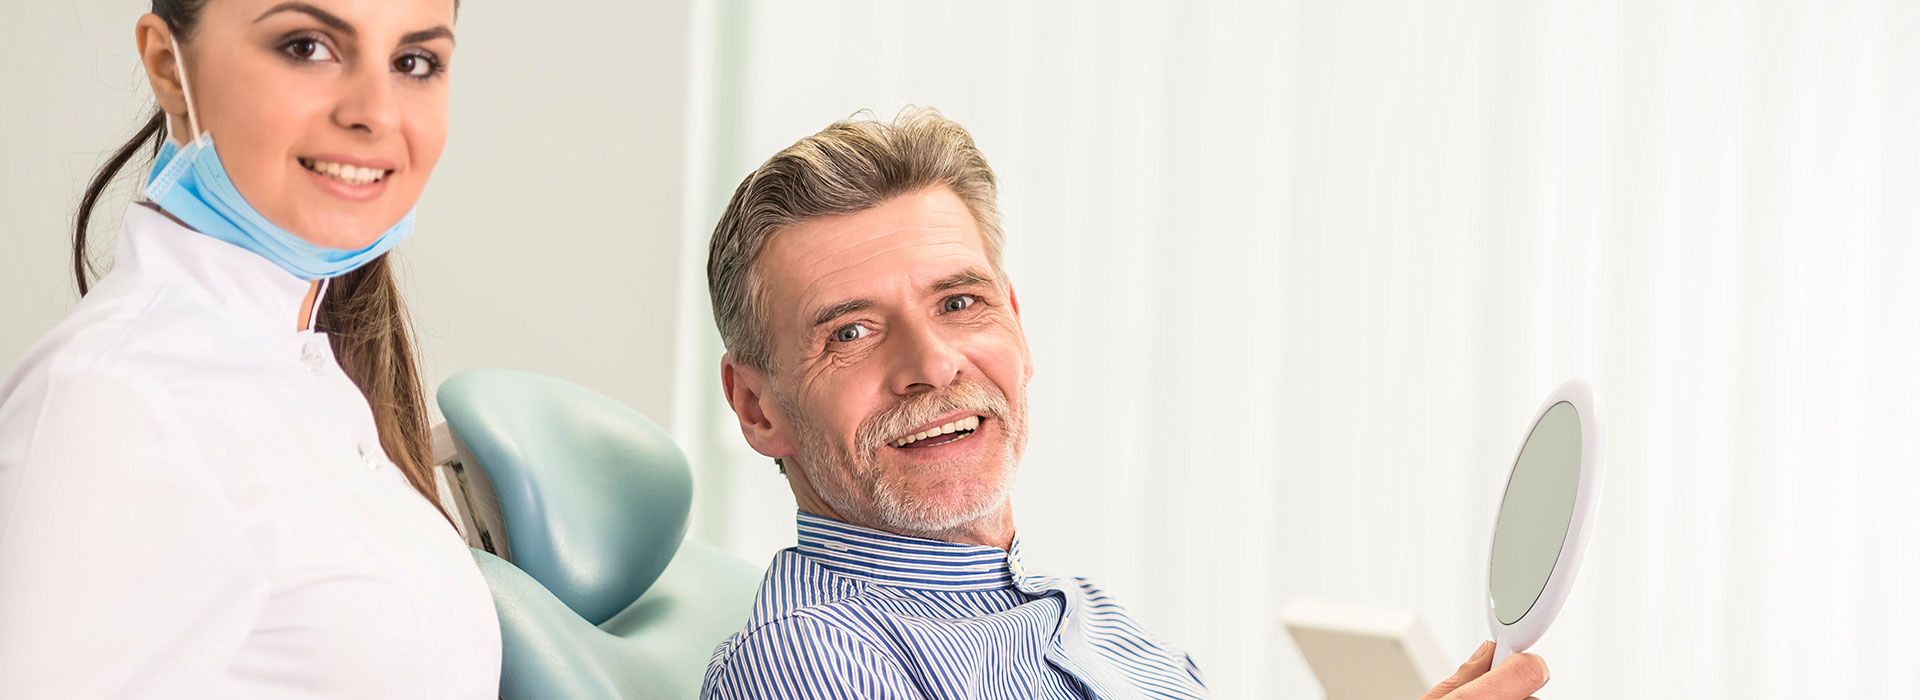 A happy patient is wearing dentures.